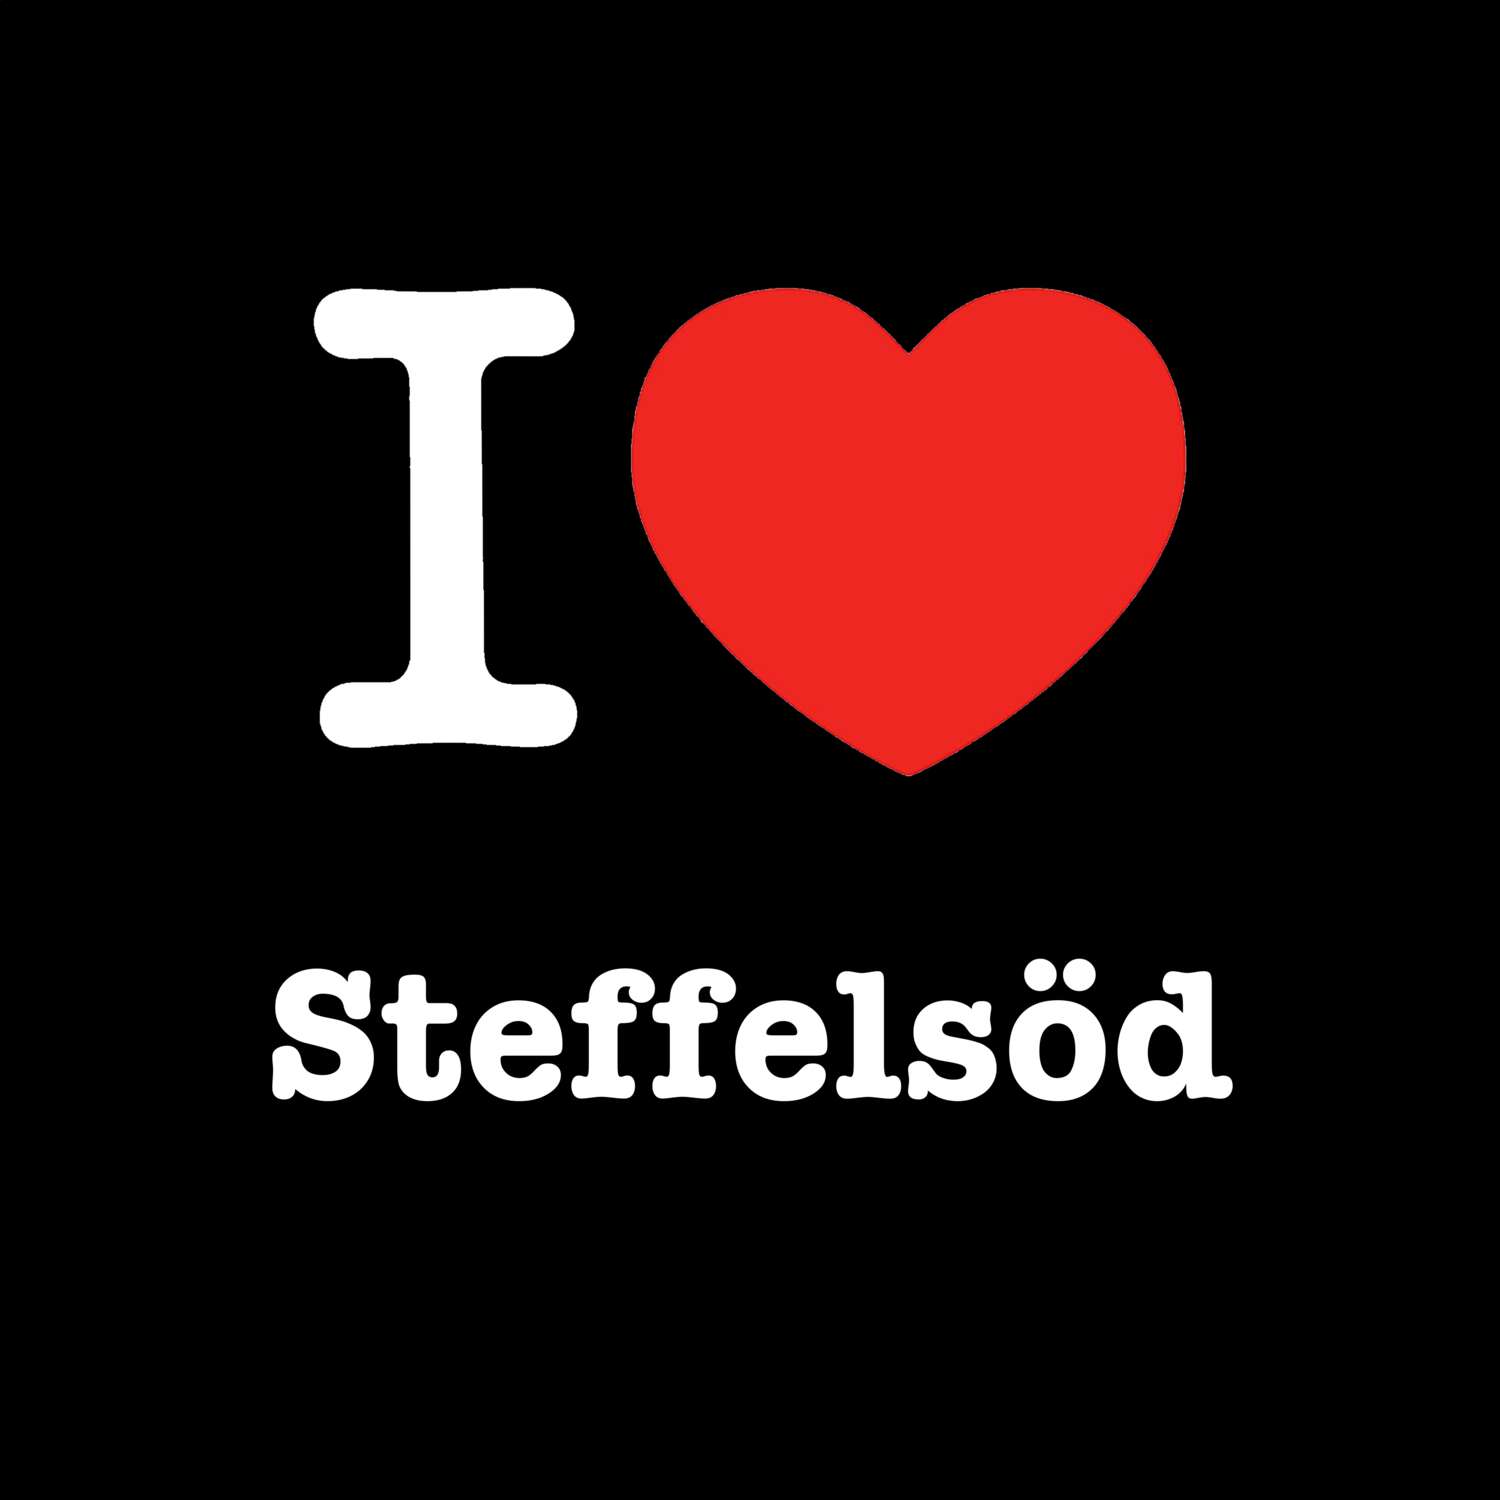 Steffelsöd T-Shirt »I love«